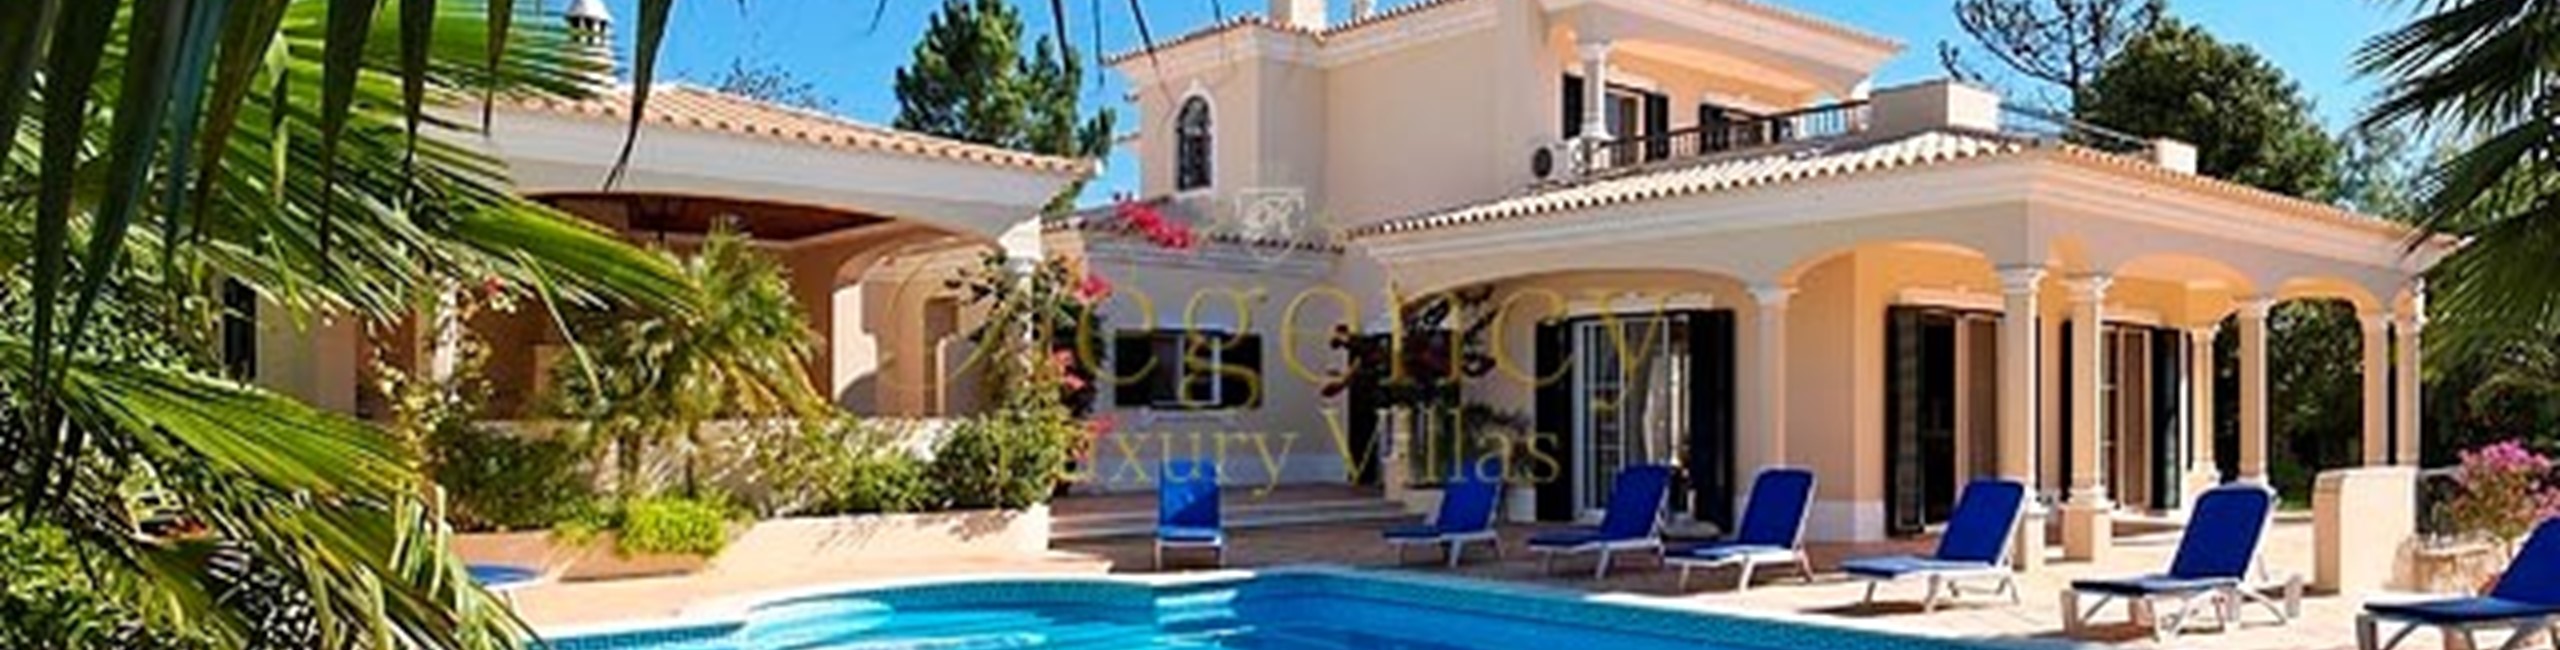 5 Bedroom Villa To Rent In Vilamoura Villa Rosolite Regency Luxury Villas 3